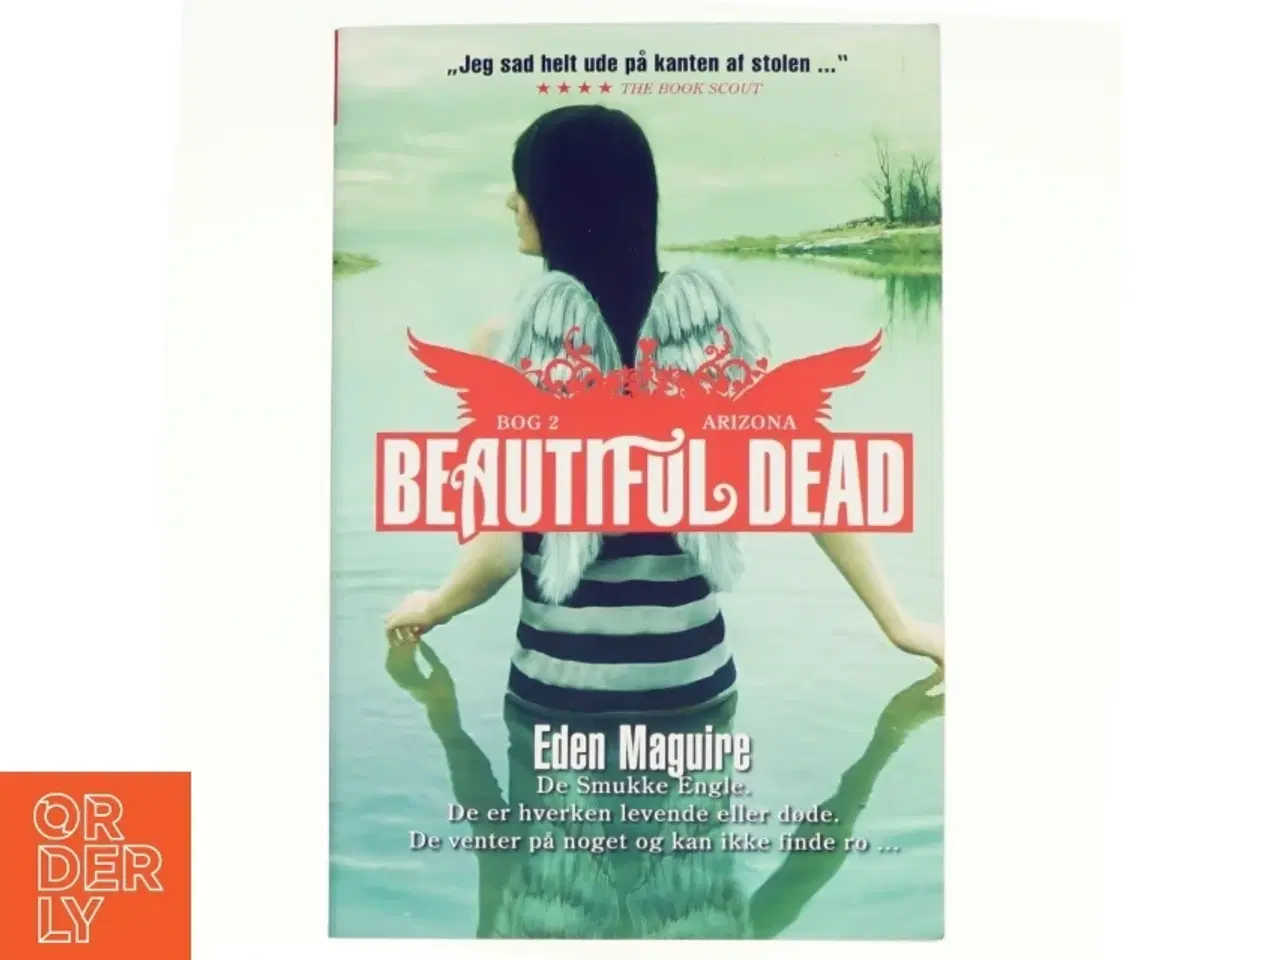 Billede 1 - Beautiful dead. Bog 2, Arizona af Eden Maguire (Bog)